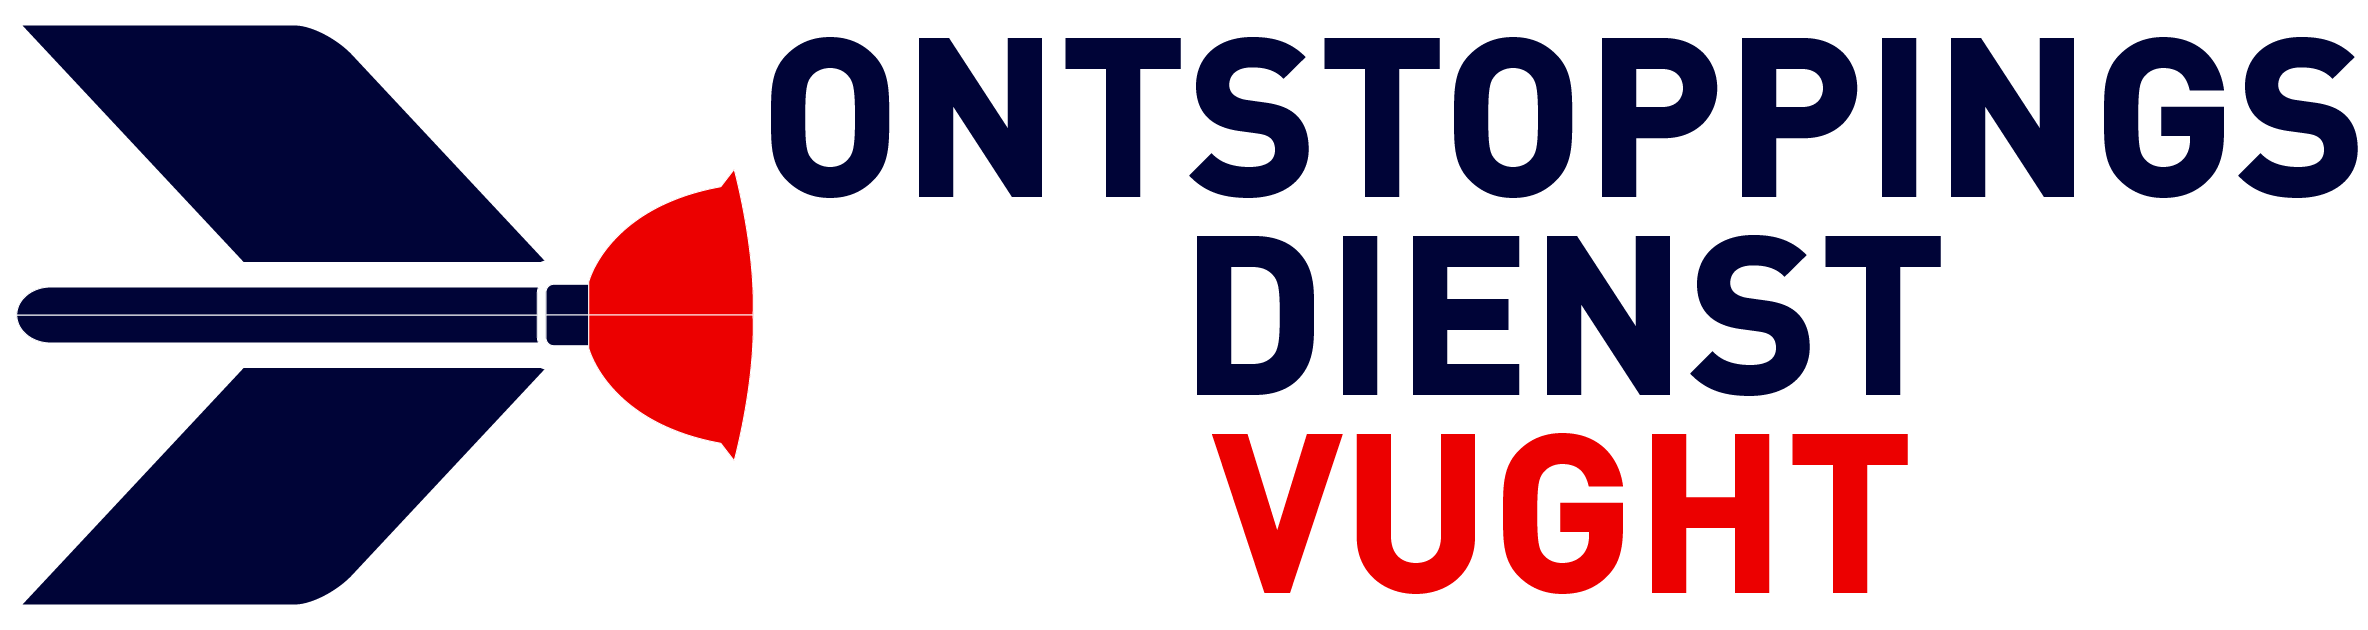 Ontstoppingsdienst Vught logo